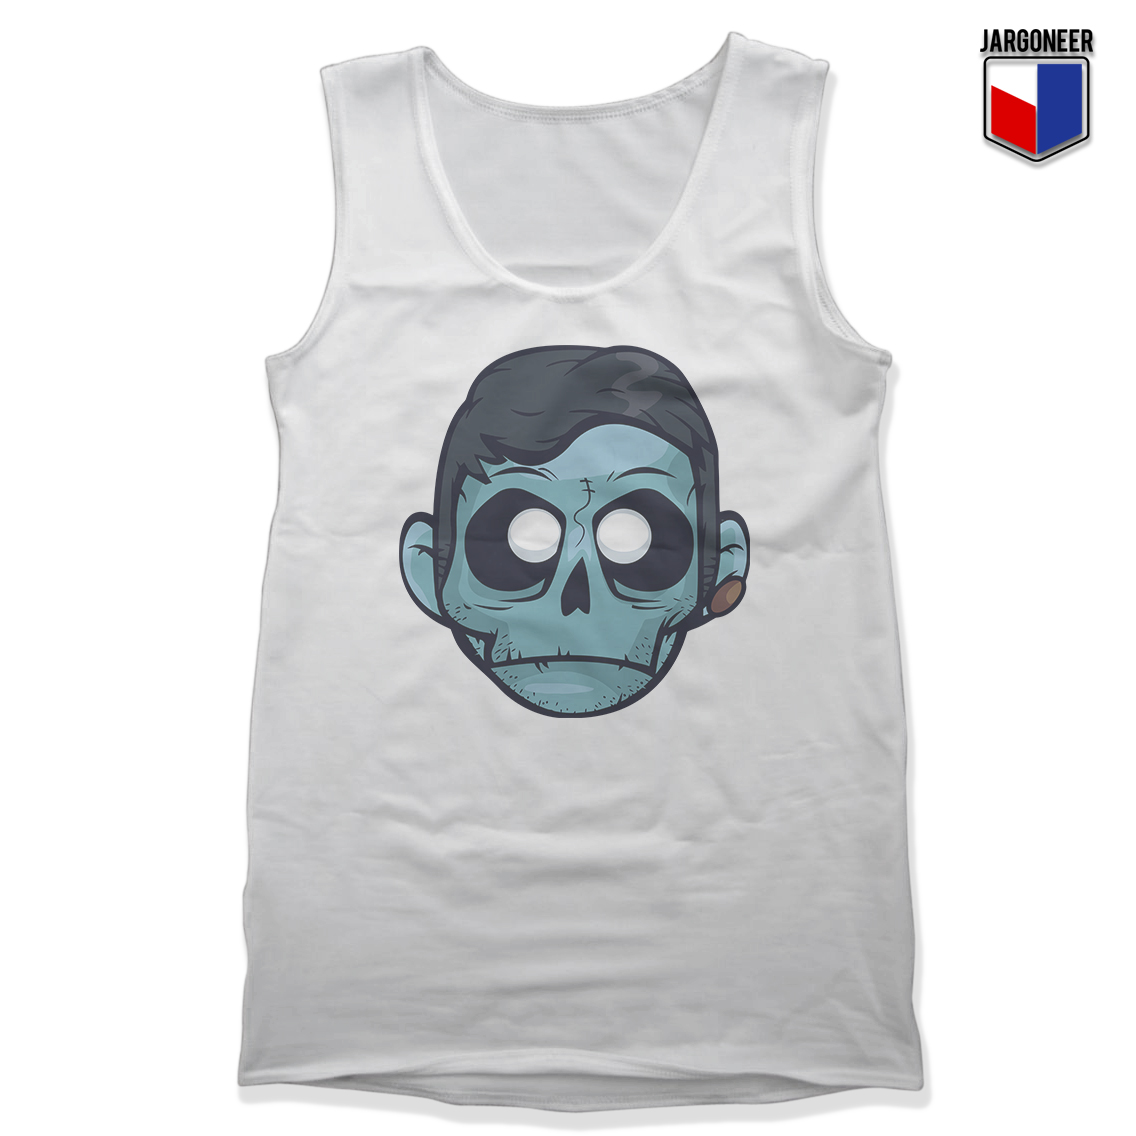 The Zombie Boy White Tank - Shop Unique Graphic Cool Shirt Designs